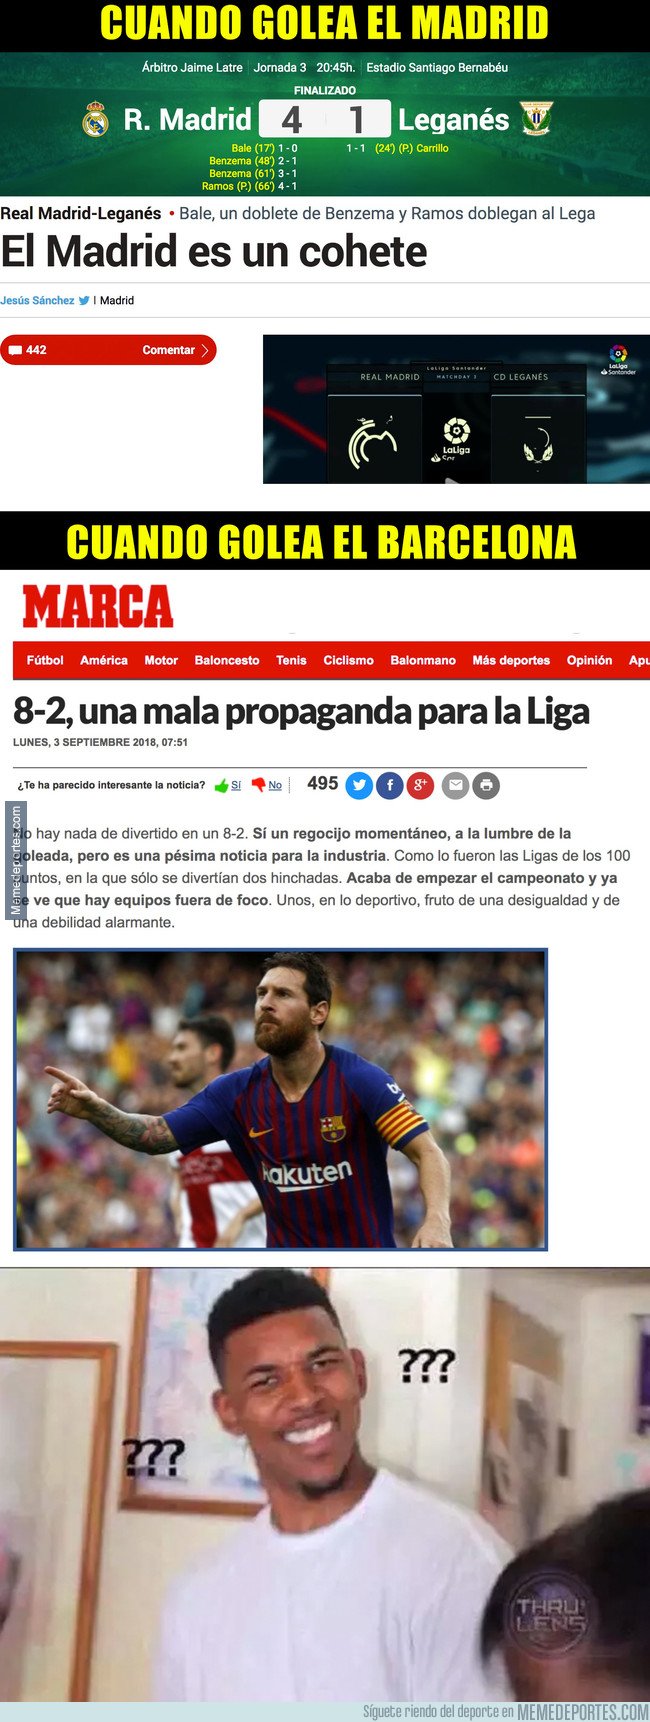 1049462 - El increíble doble rasero de Marca en sus titulares cuando golea el Madrid y cuando golea el Barcelona